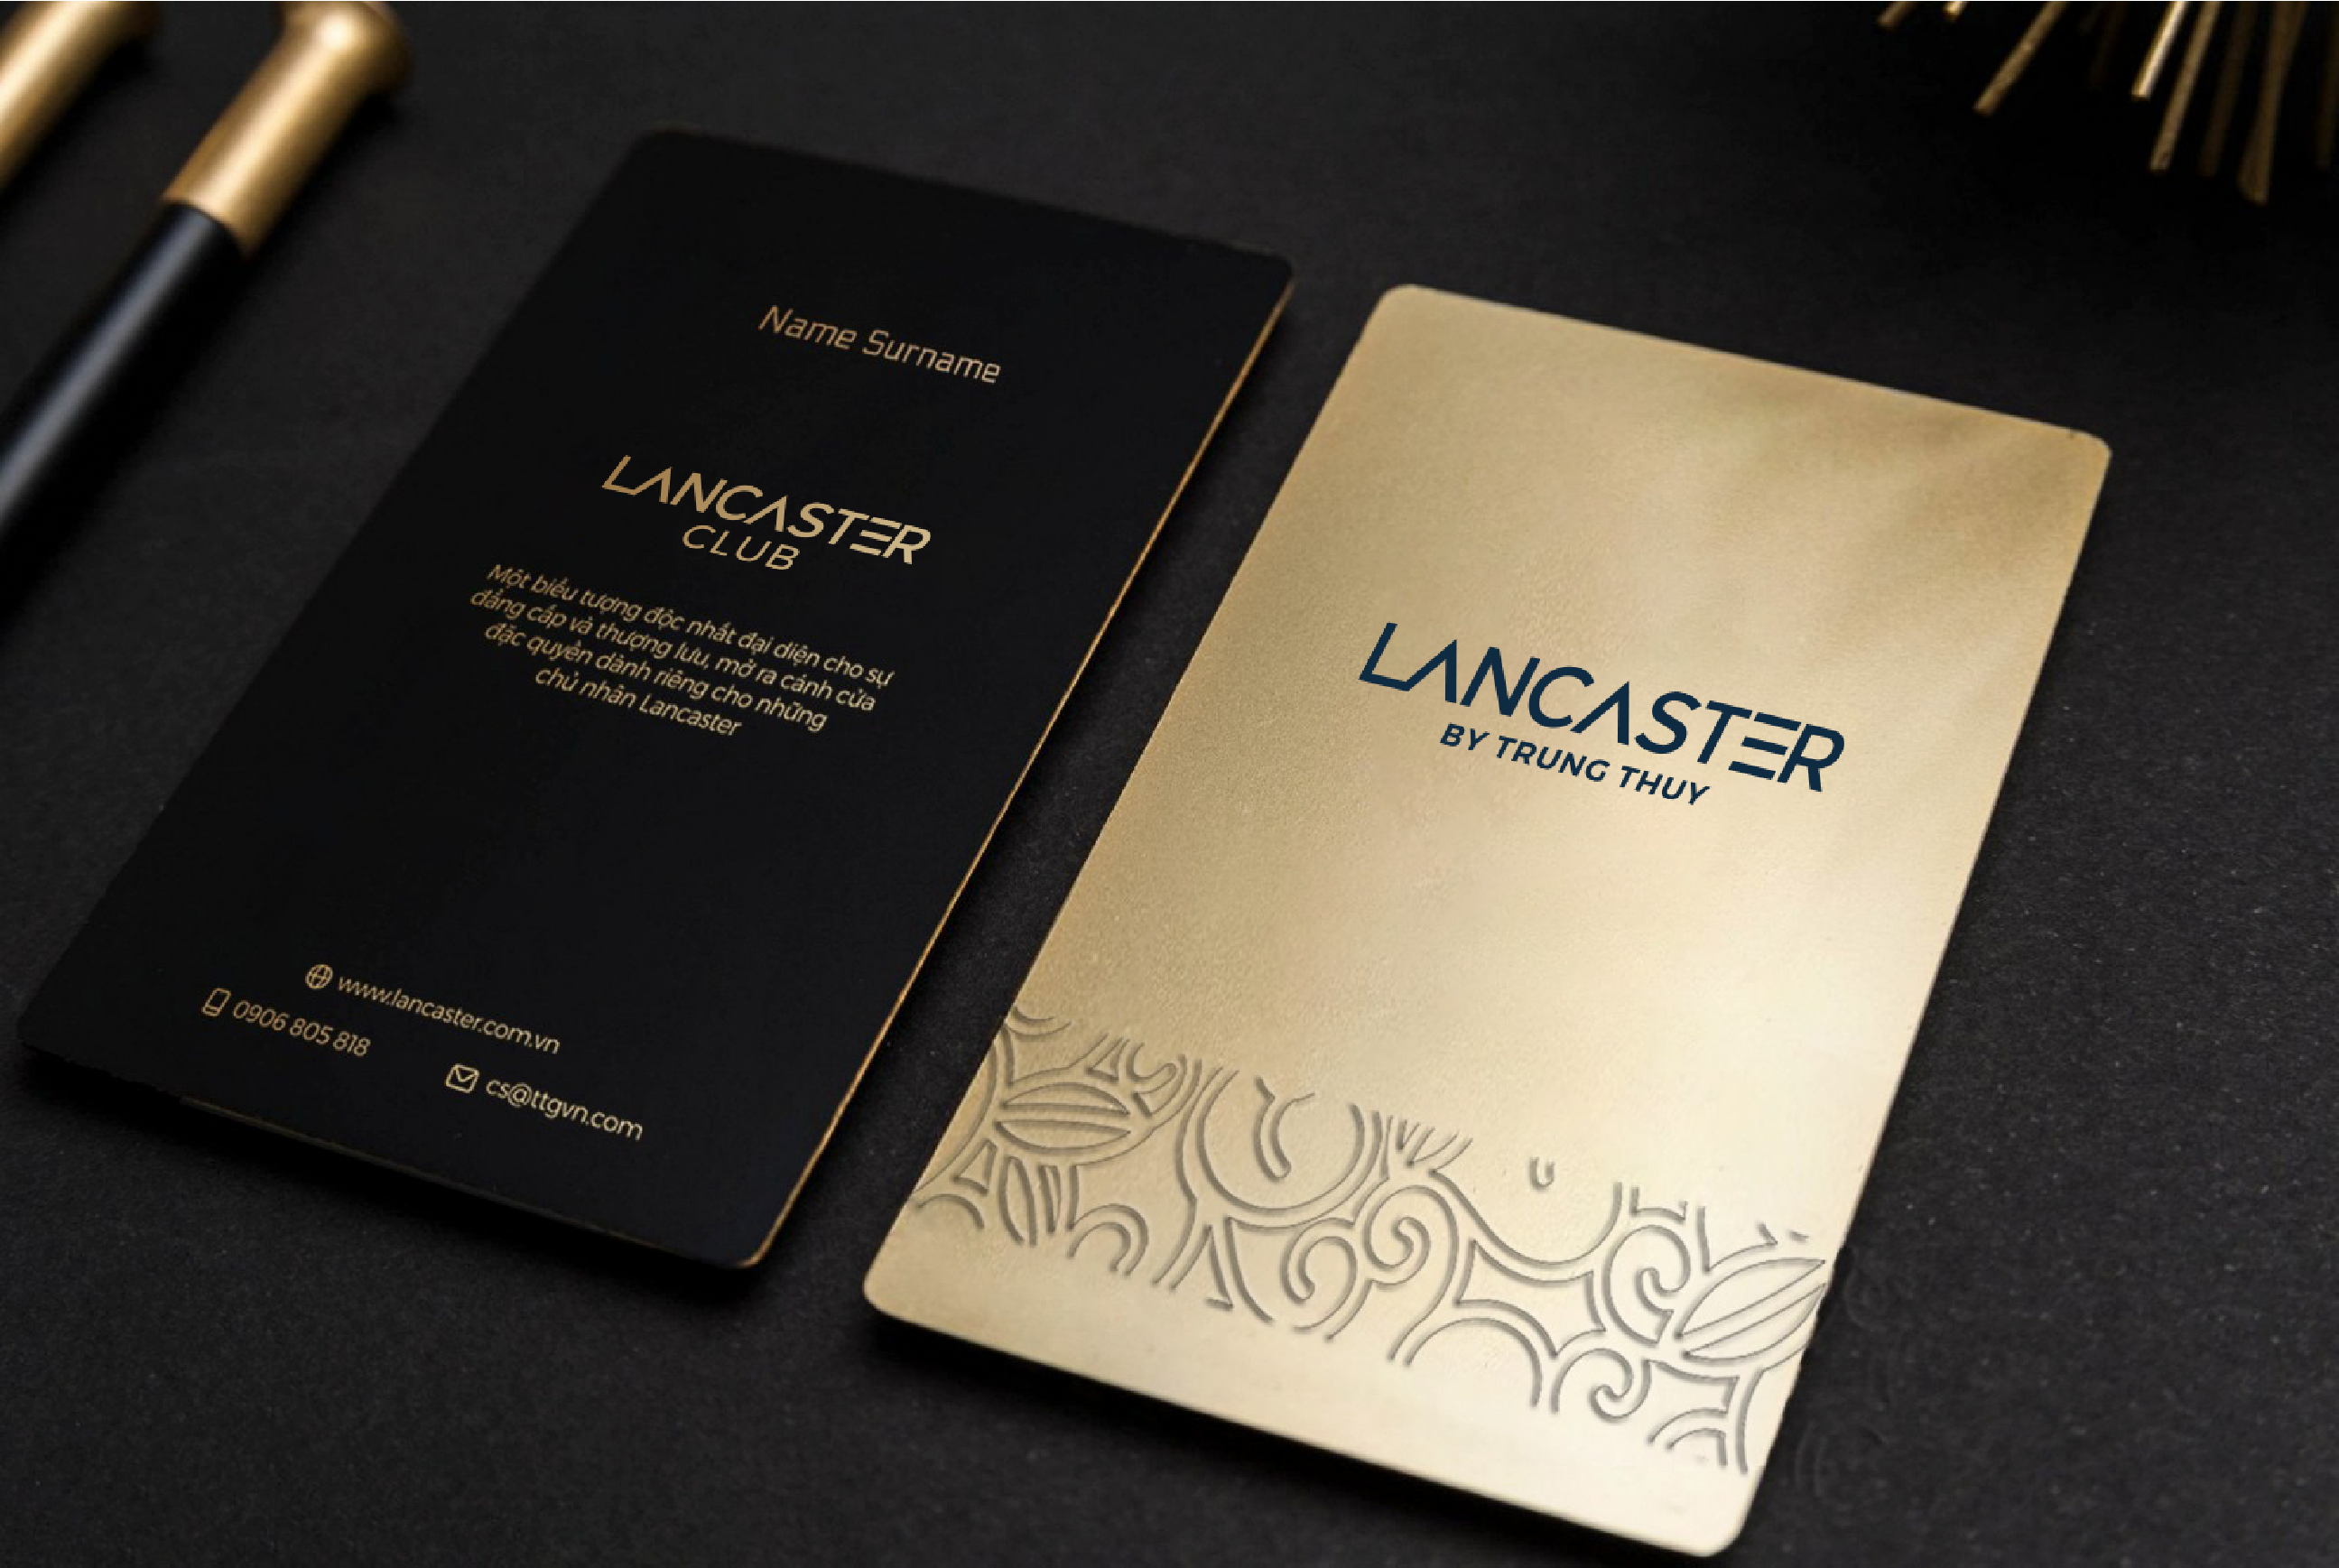 Tập đoàn Trung Thủy chào đón Lancaster The Master và ra mắt câu lạc bộ danh giá Lancaster Club